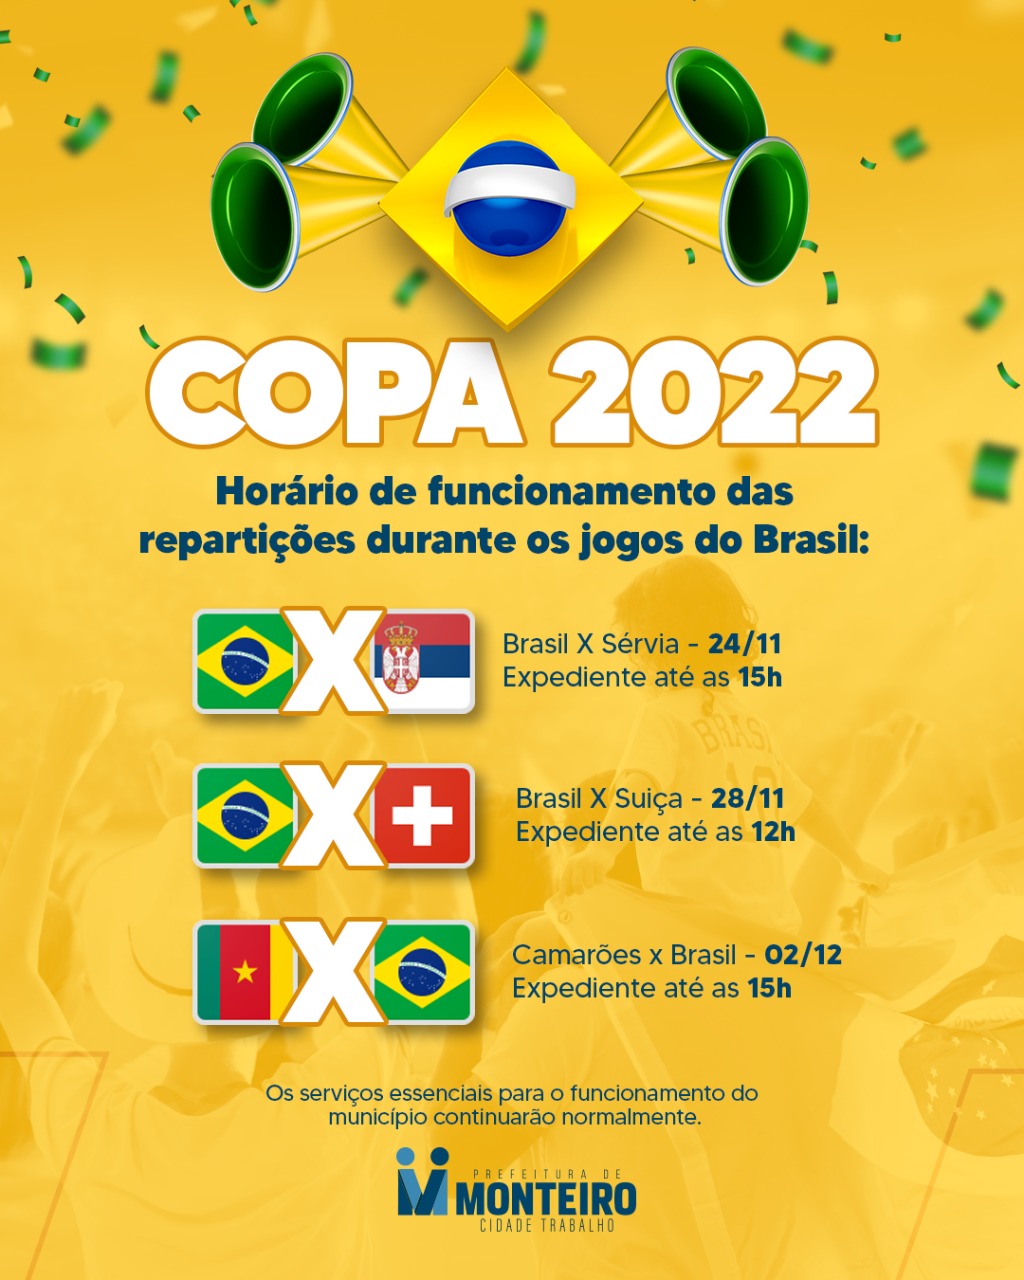 Copa 2022: Horário de funcionamento durante os jogos da Seleção